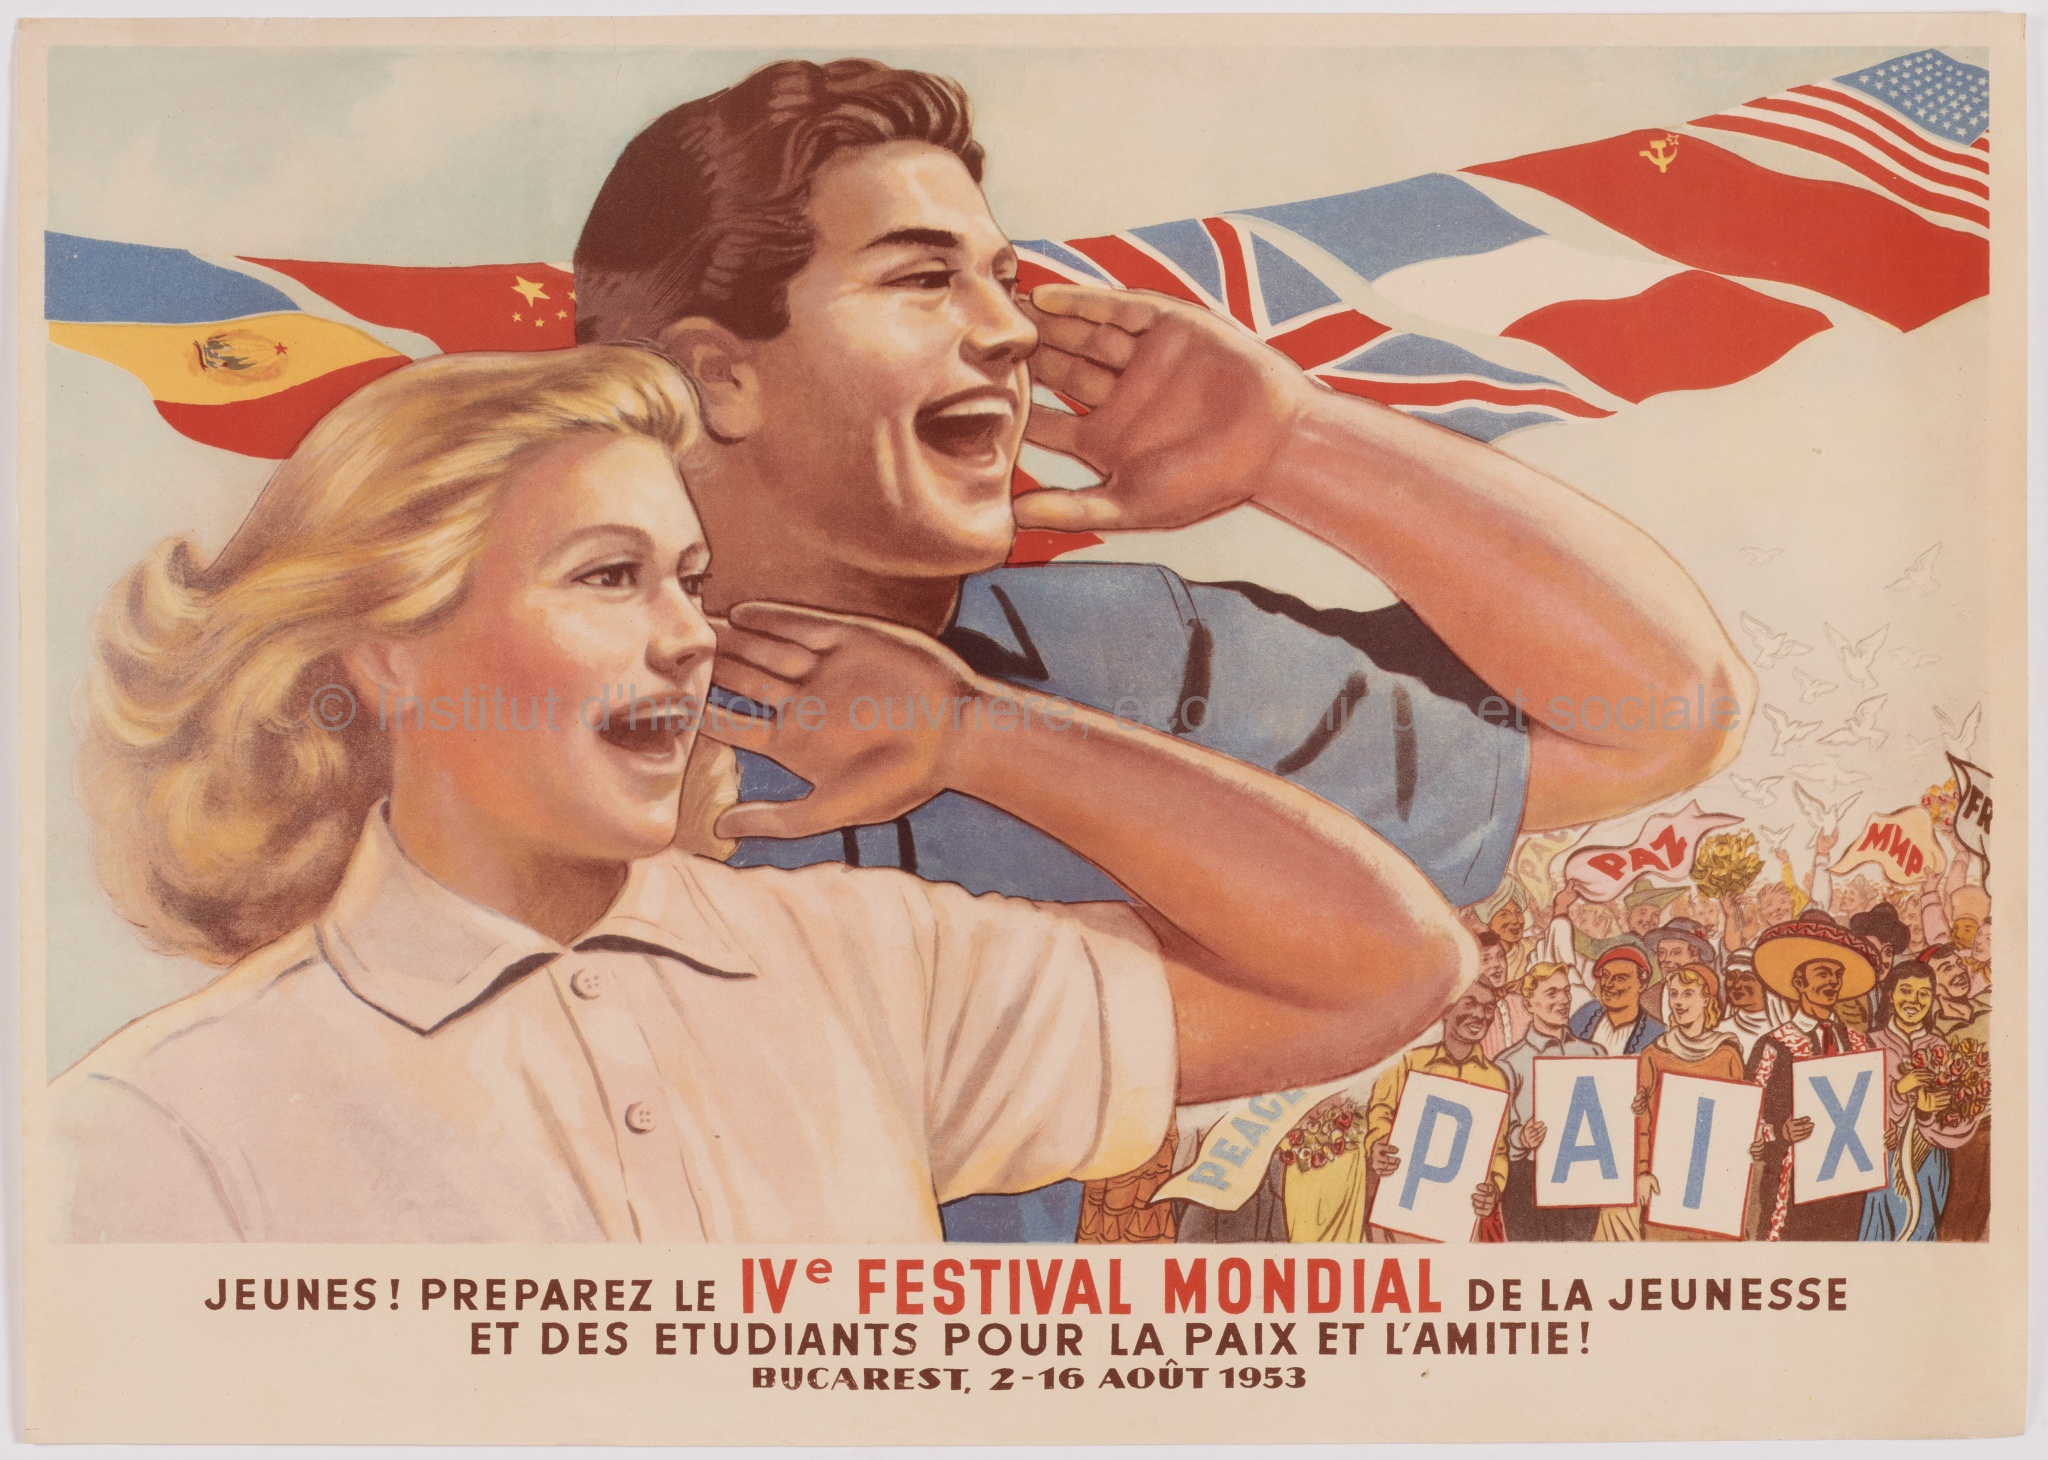 Jeunes ! Préparez le IVe Festival de la jeunesse et des étudiants pour la paix et l'amitié : Bucarest, 2-16 août 1953